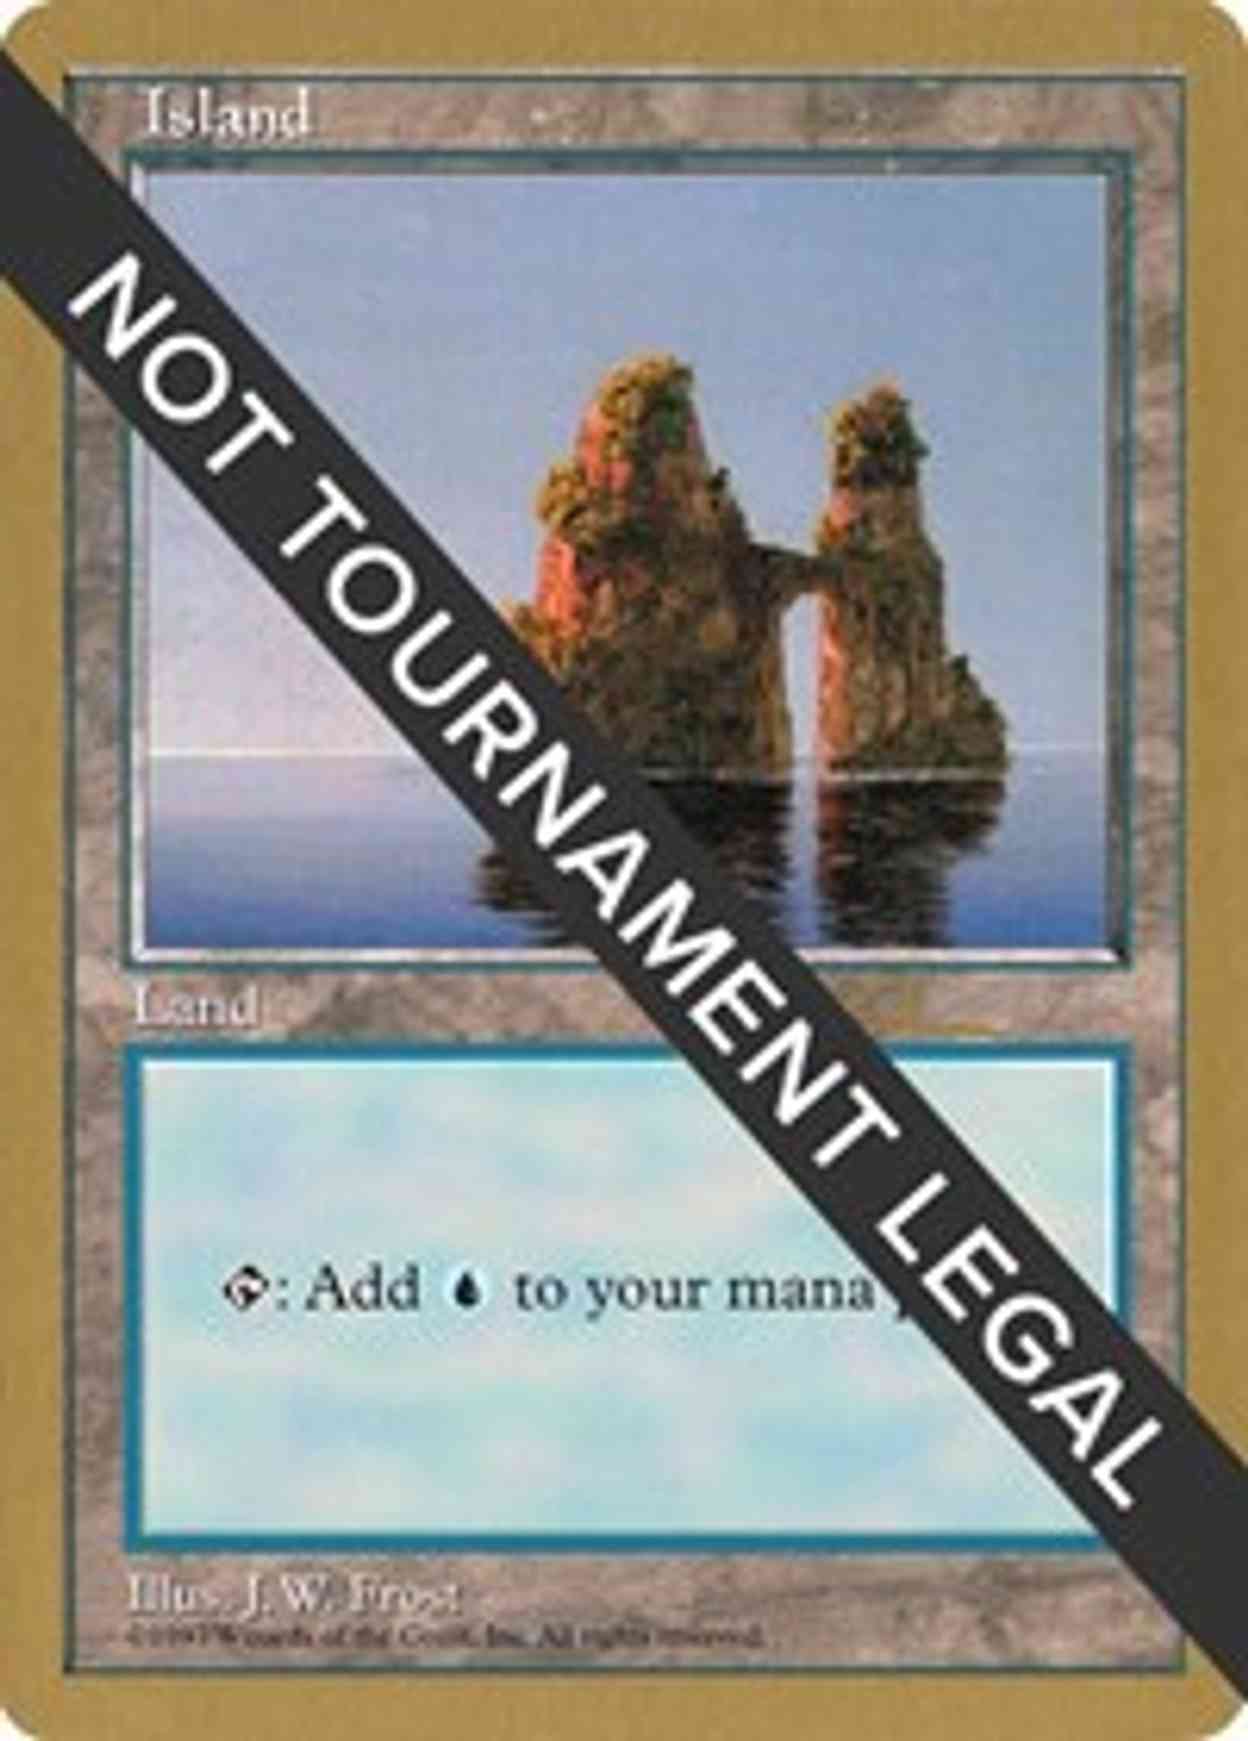 Island (427) - 1997 Paul McCabe (5ED) magic card front